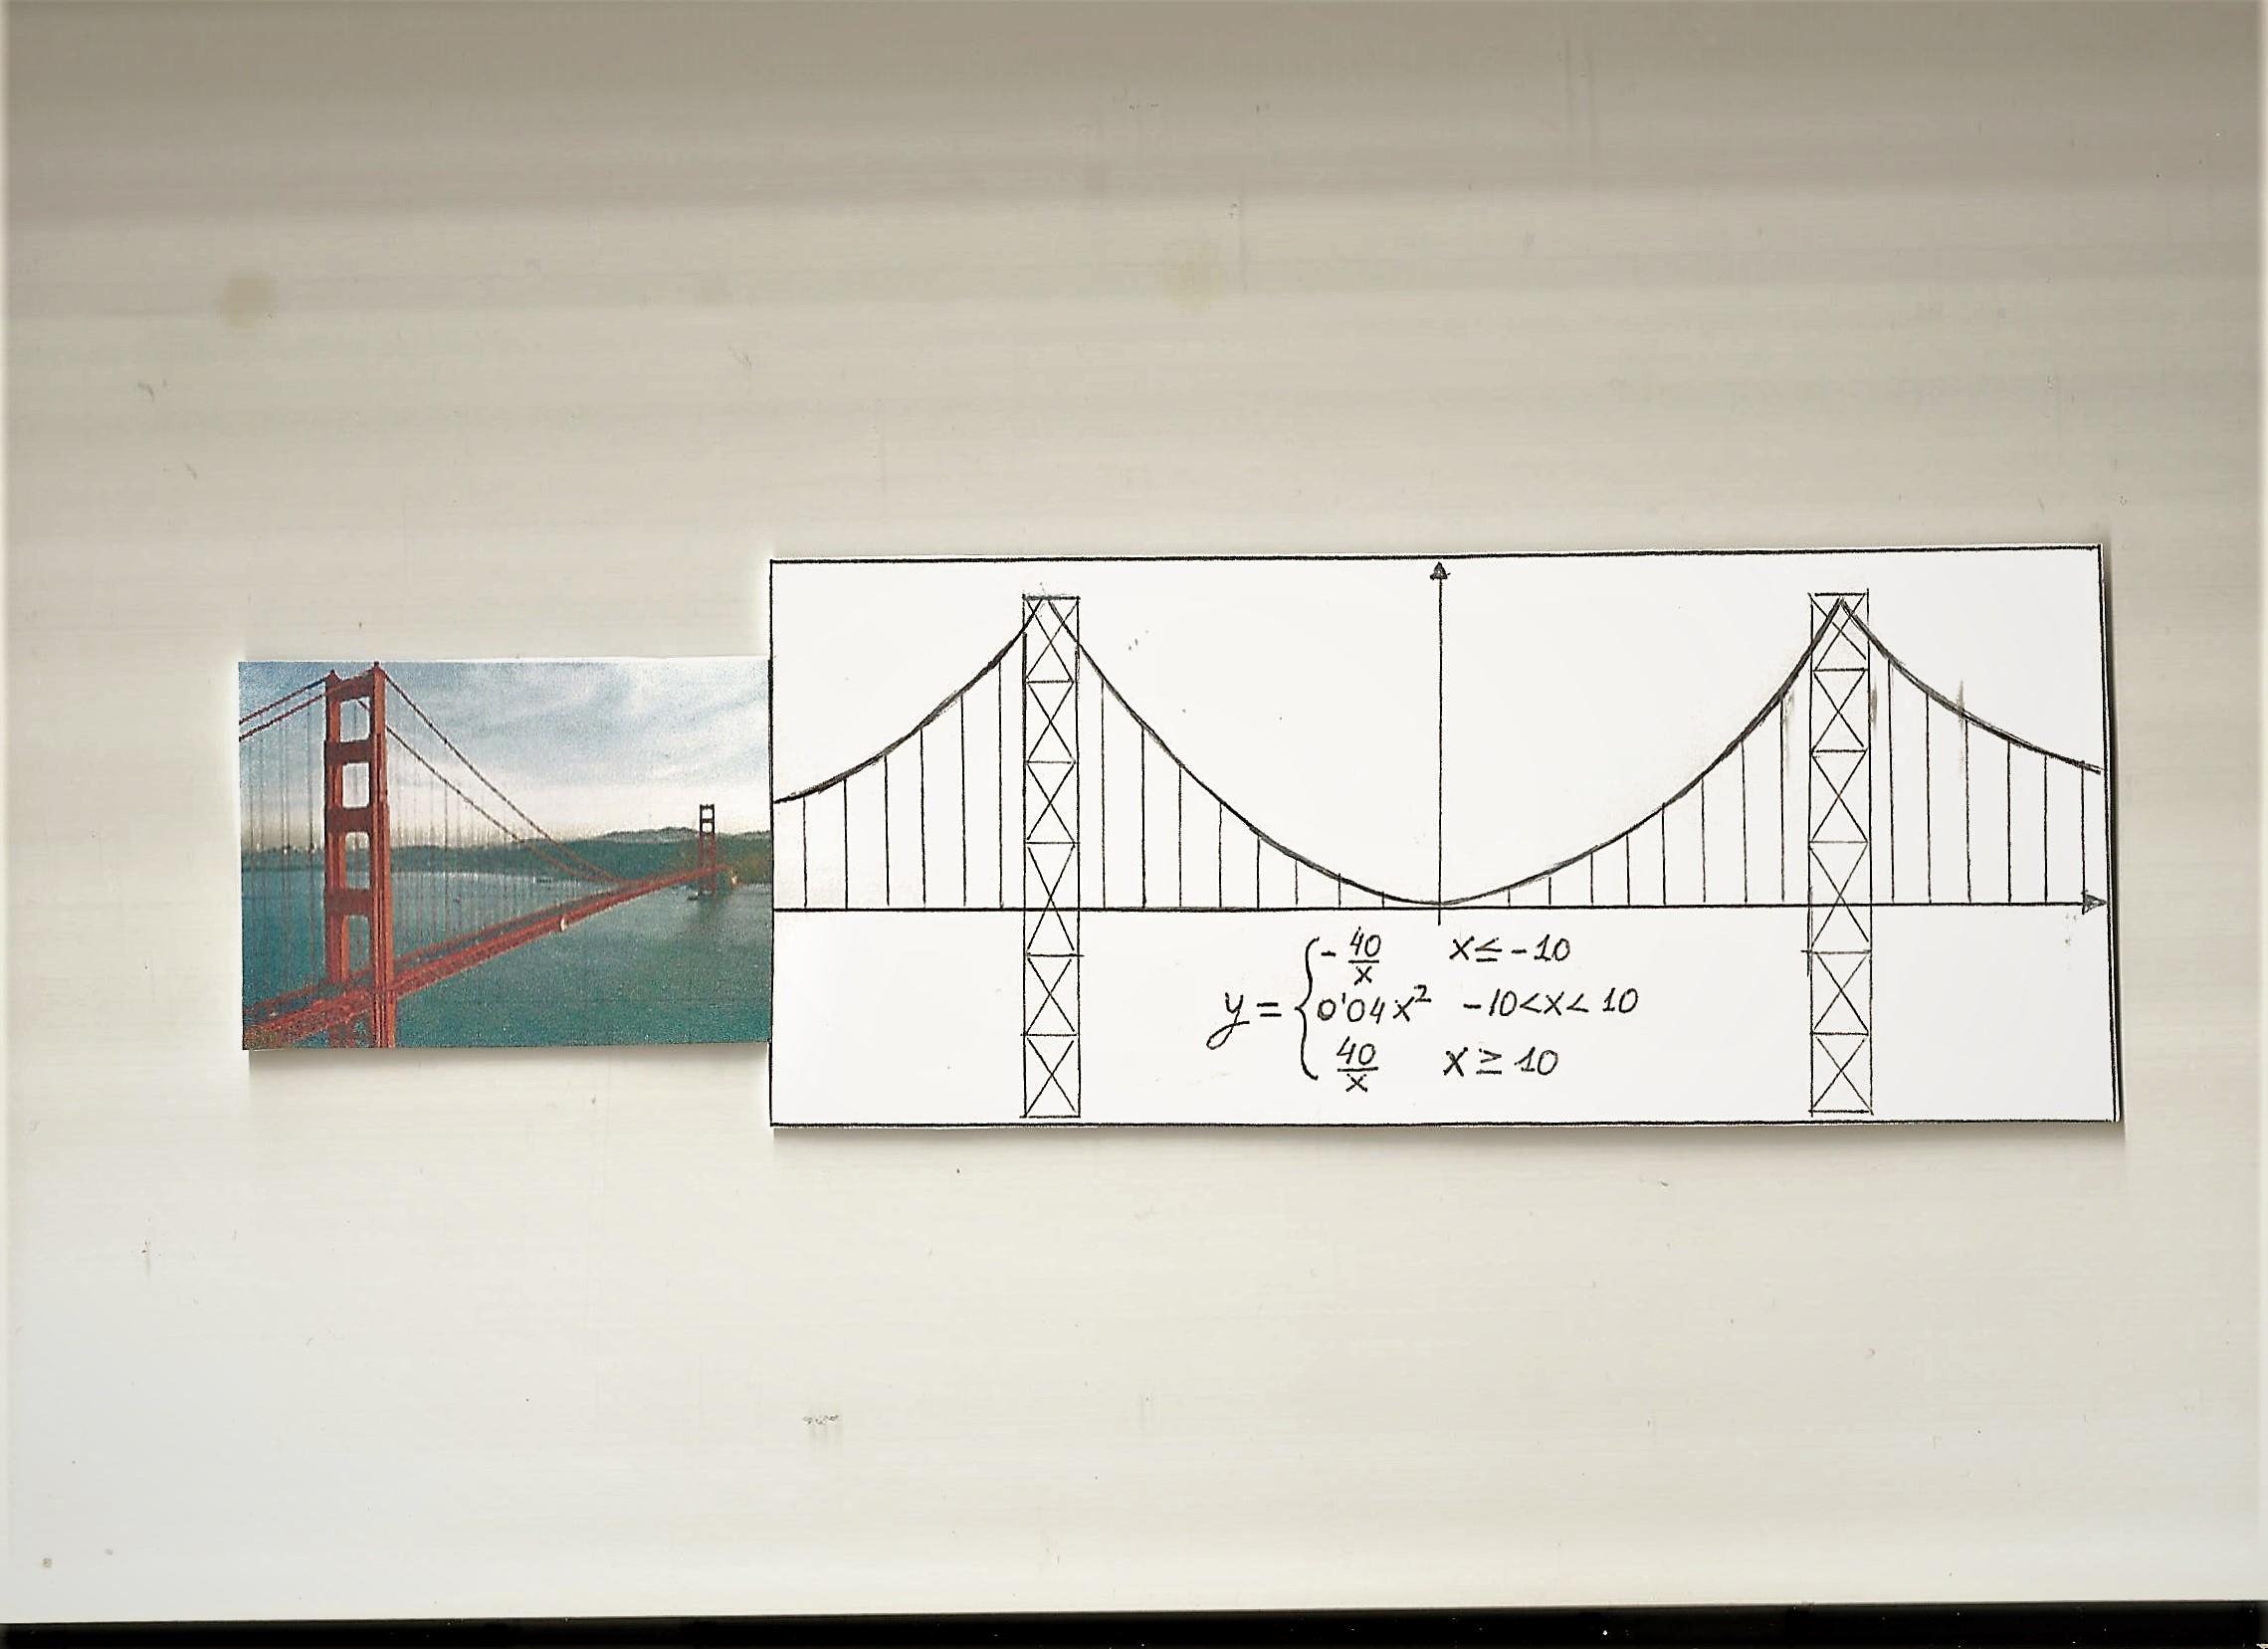 Historia y simulación didáctica de la catenaria del puente colgante Golden Gate - El blog de